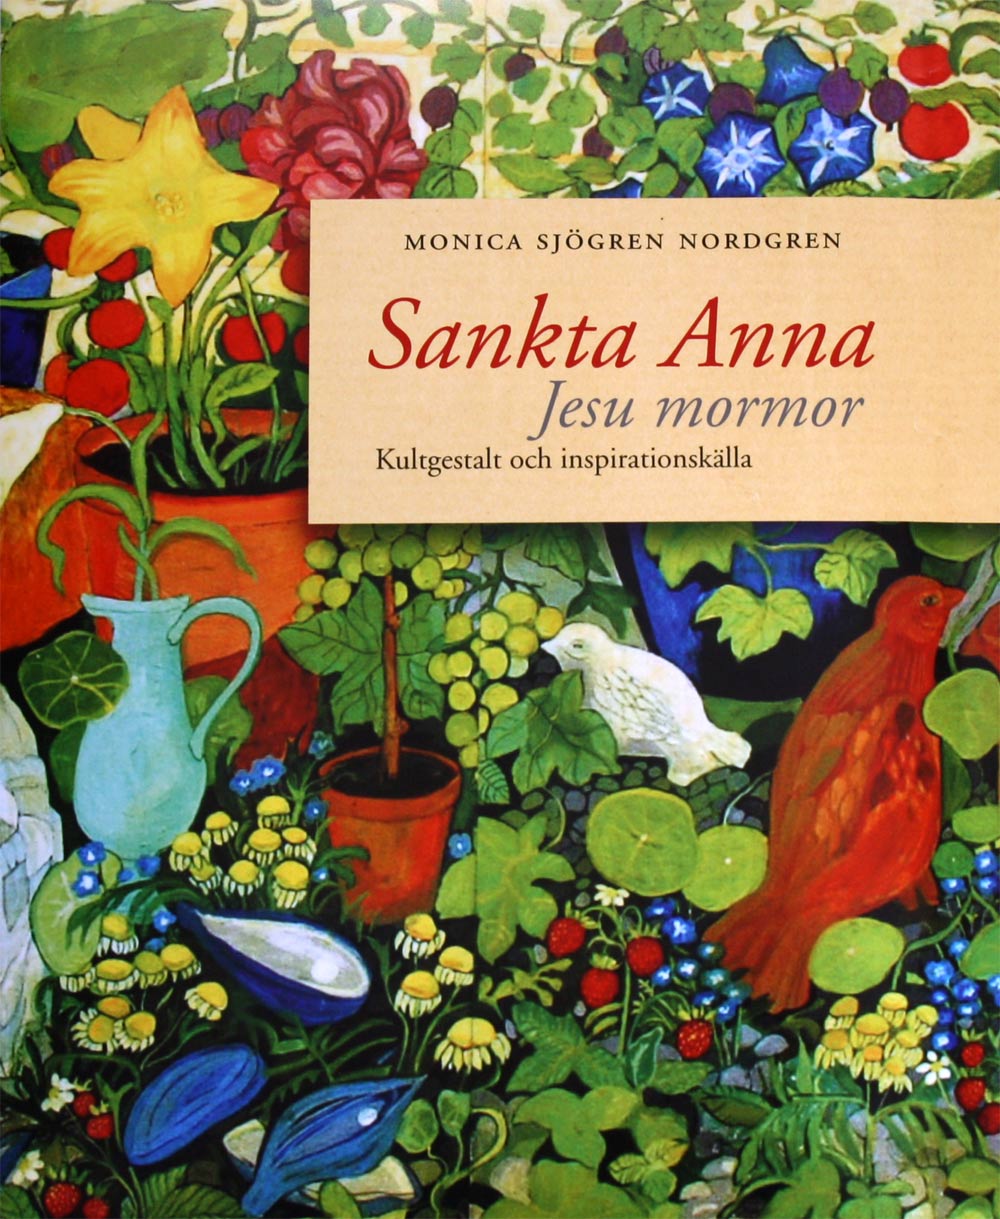 Sankta Anna, Jesu mormor ISBN 978-91-633-6331-3 www.kyrkakonstkultur.se